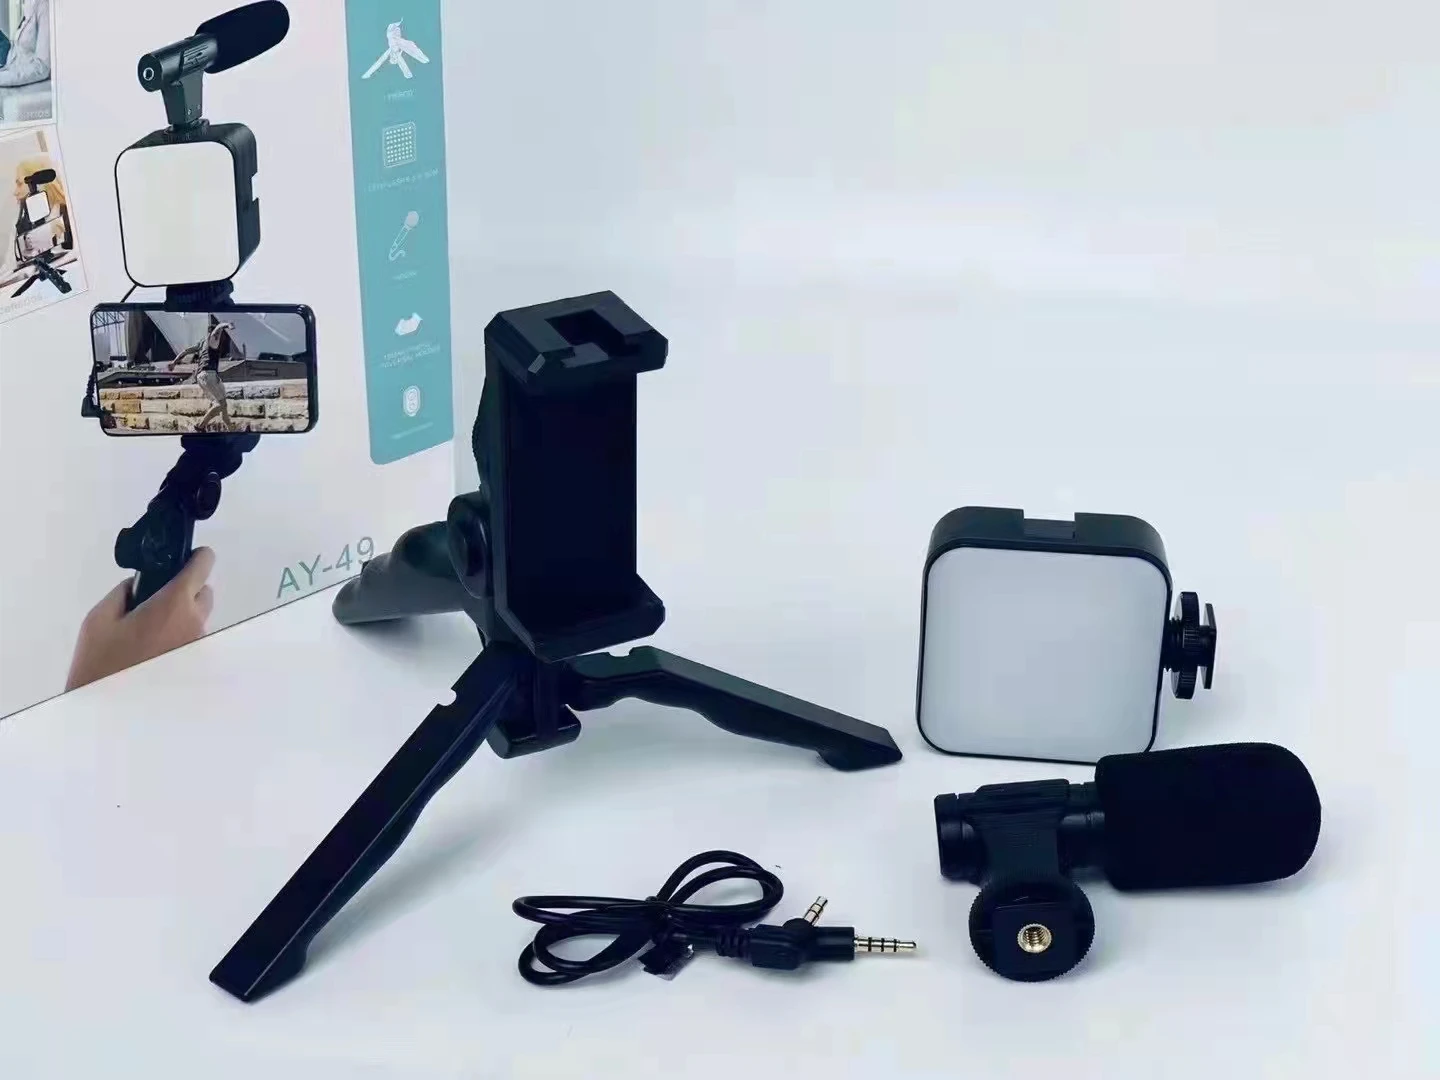 Kit Para Creación y Transmisión De Videos Con Micrófono Para Teléfono Móvil  / GTI Modelo AY-49